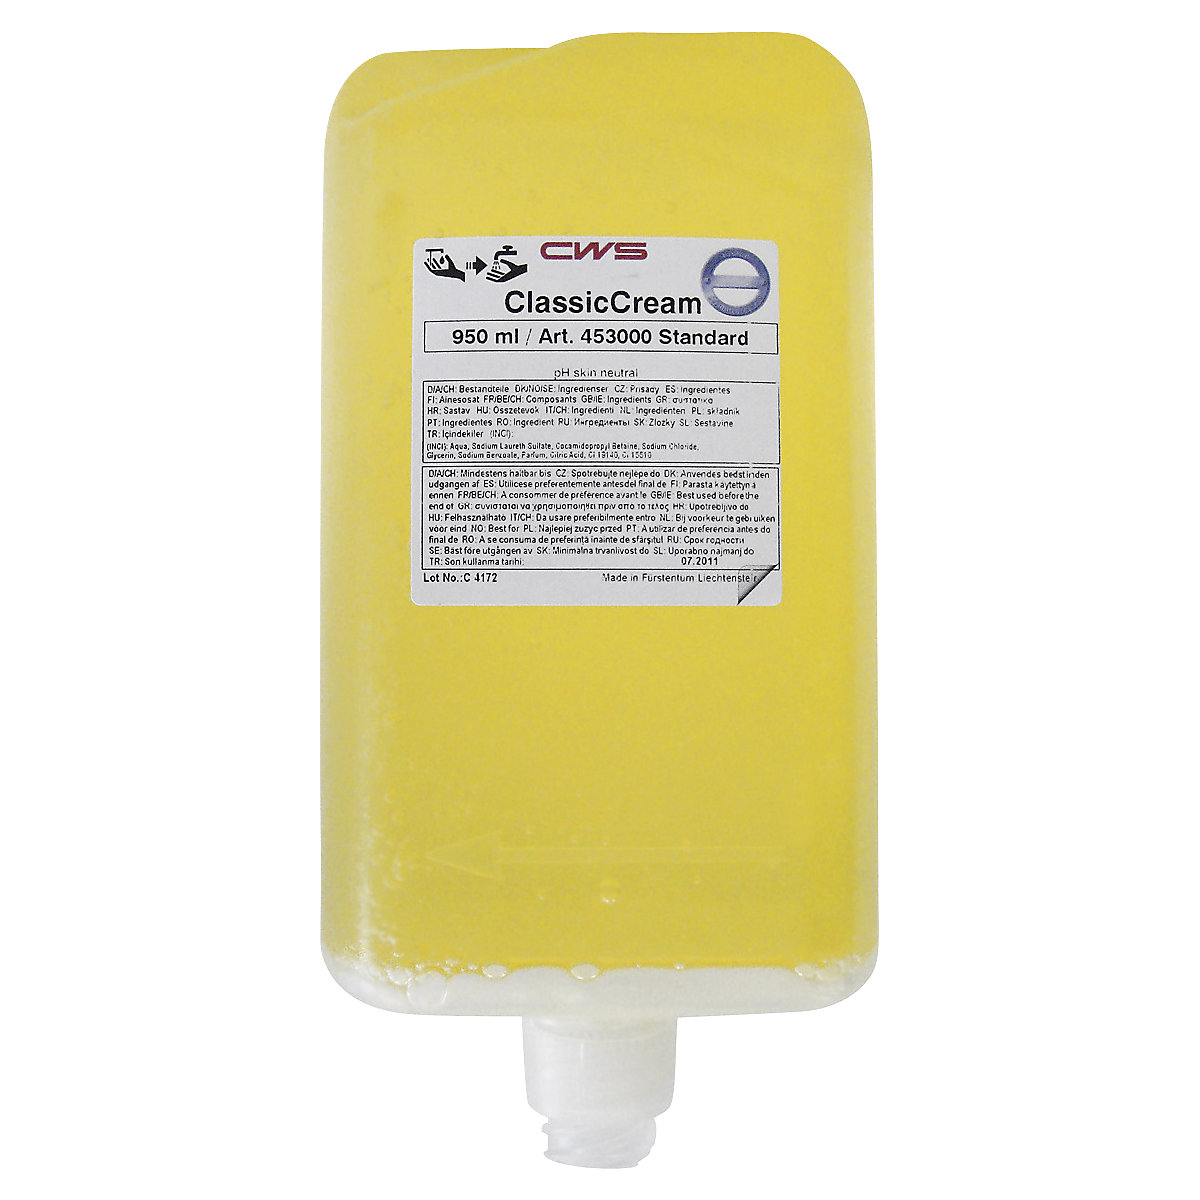 Classic Cream liquid soap - CWS